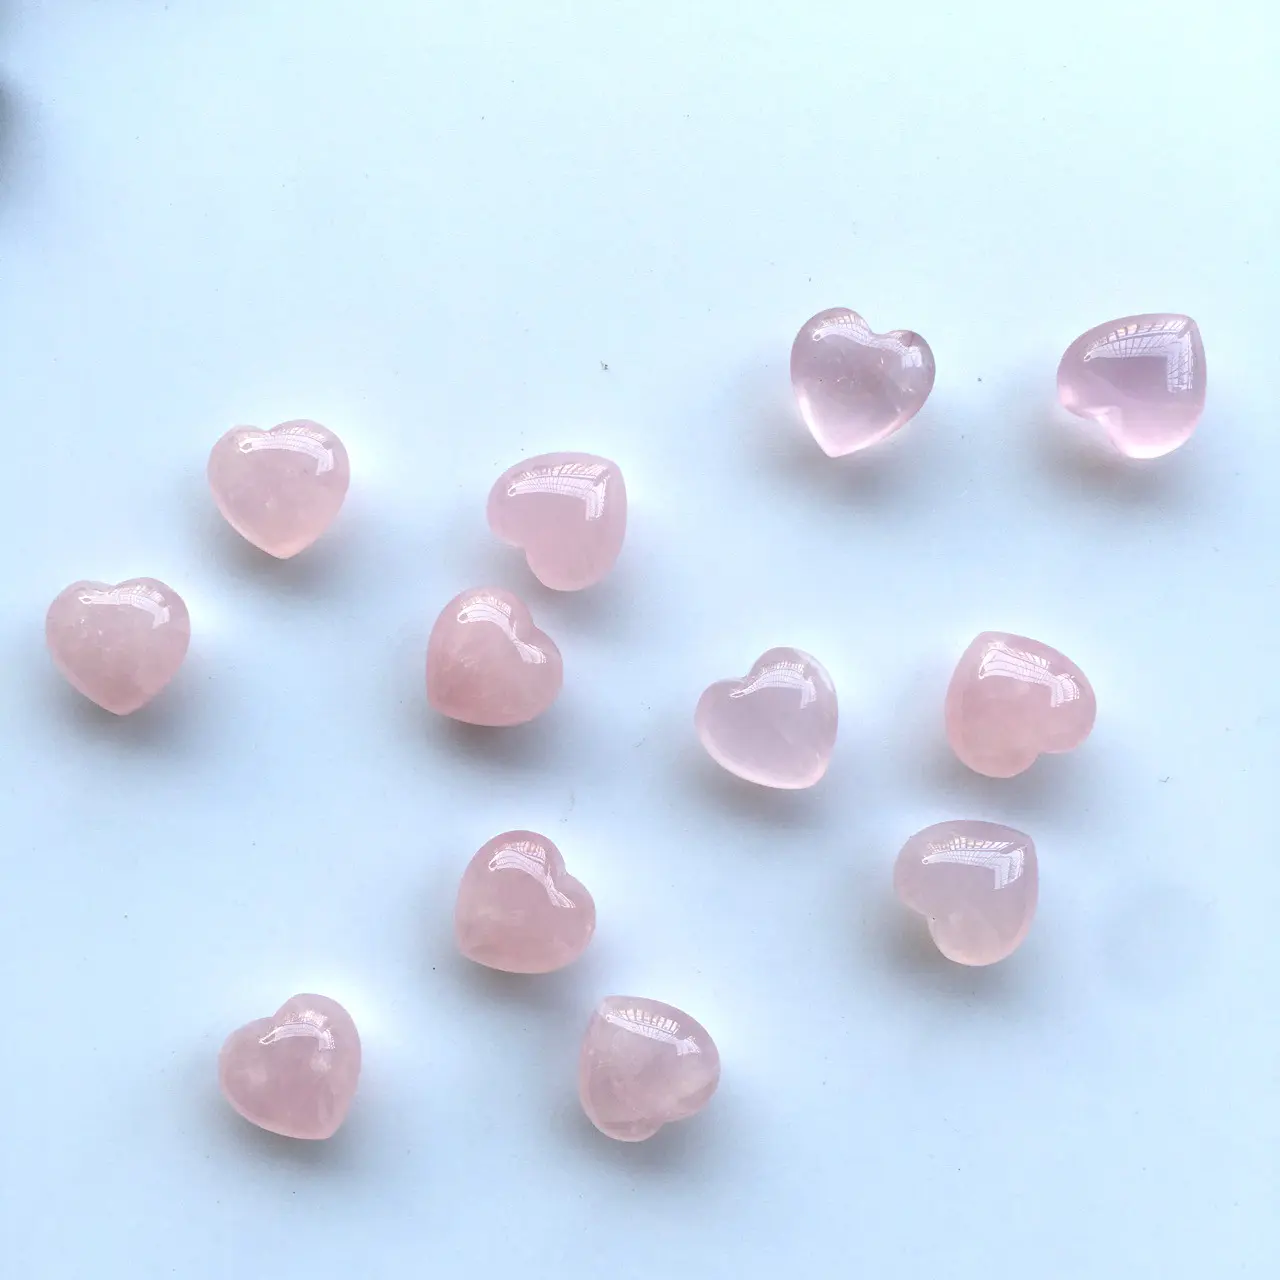 Свободный кулон в форме сердца из драгоценного камня, хрустальное ожерелье в форме сердца, кулон или подвеска в виде сердца из розового кварца